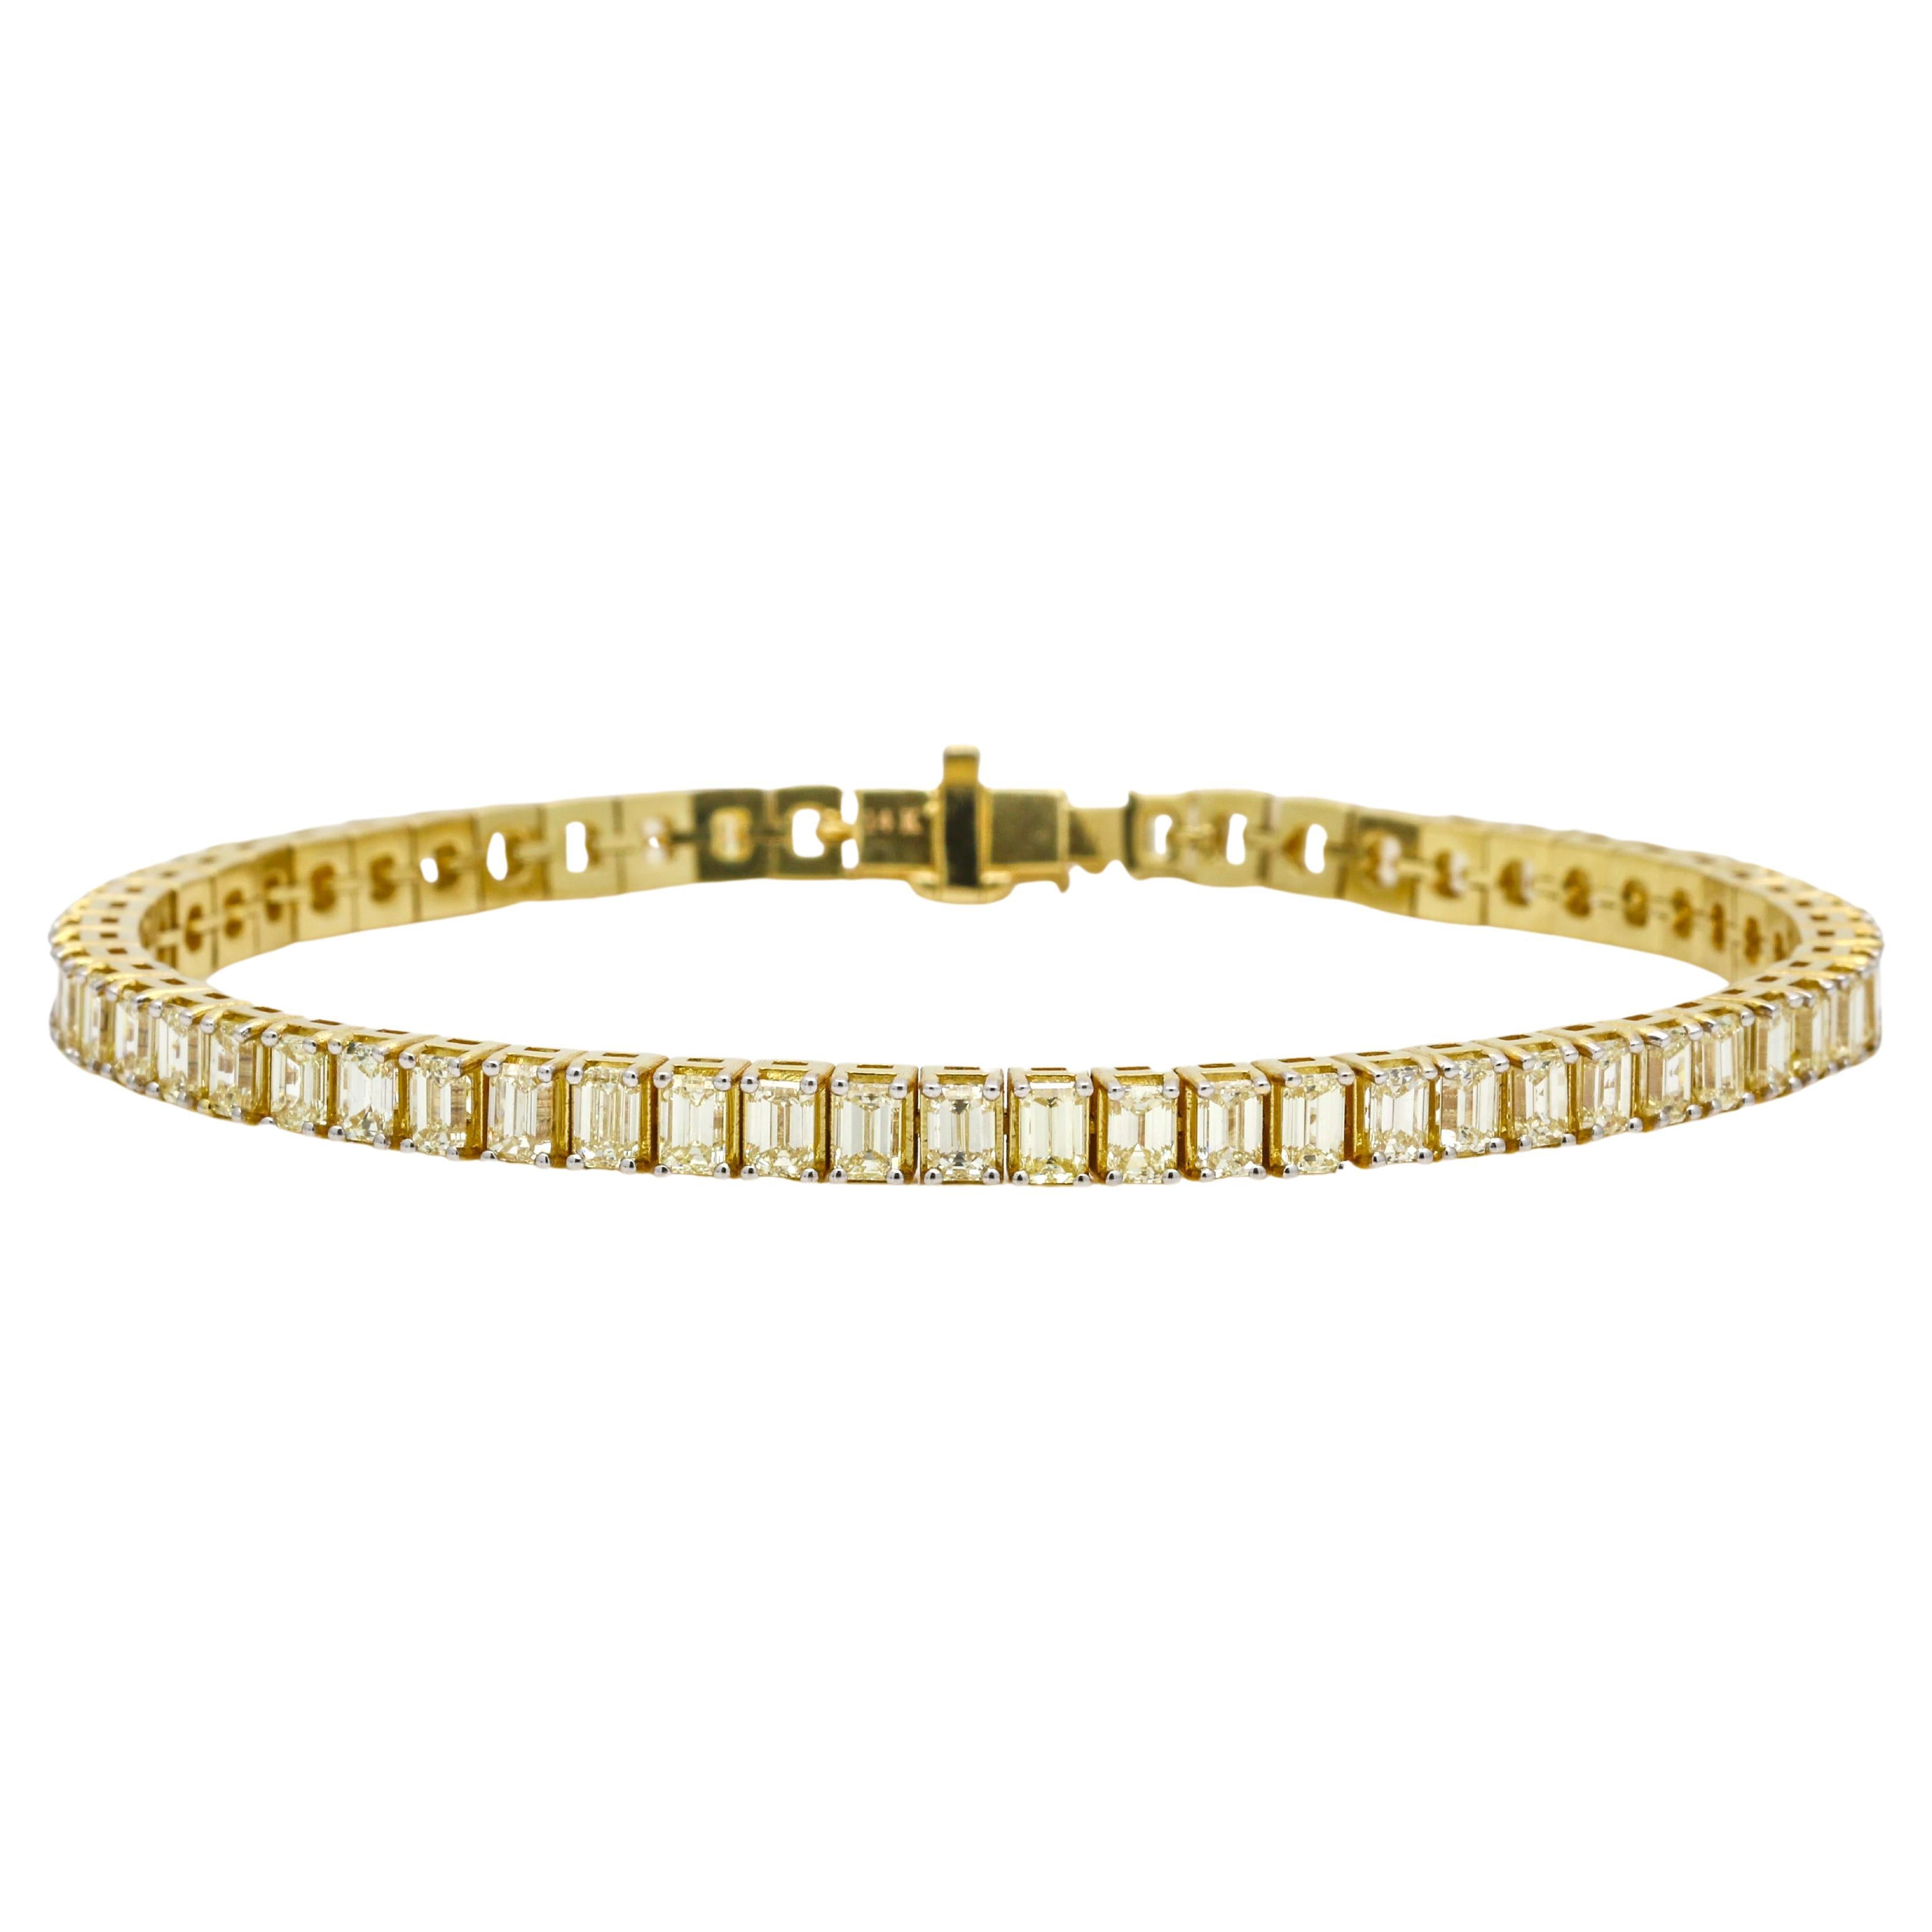 Bracelet tennis pour femme en or jaune 14 carats avec diamants taille émeraude de 8,97 carats